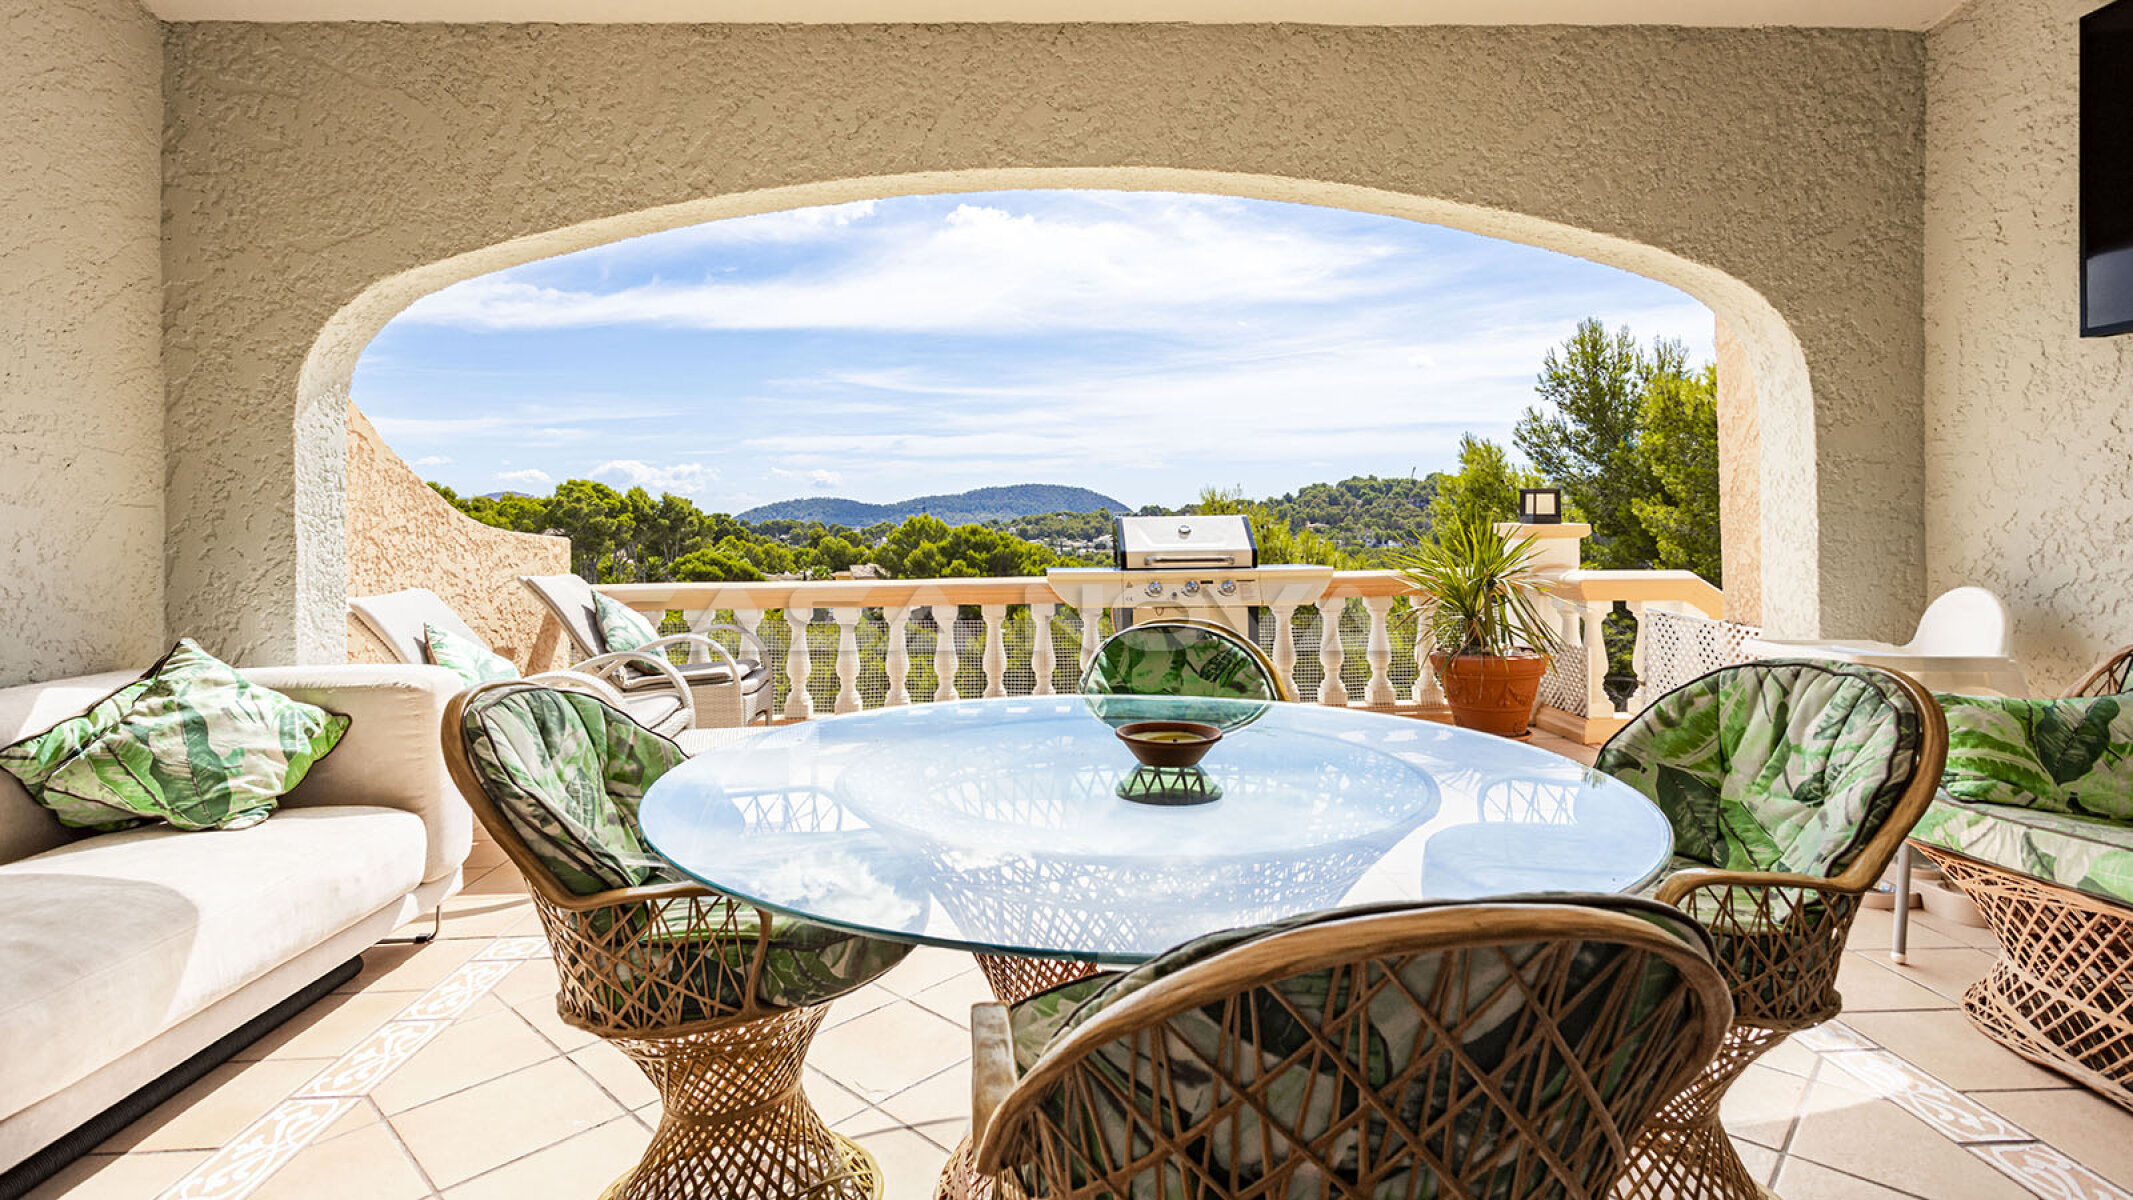 Encantadora villa en Mallorca con vistas panor�micas 